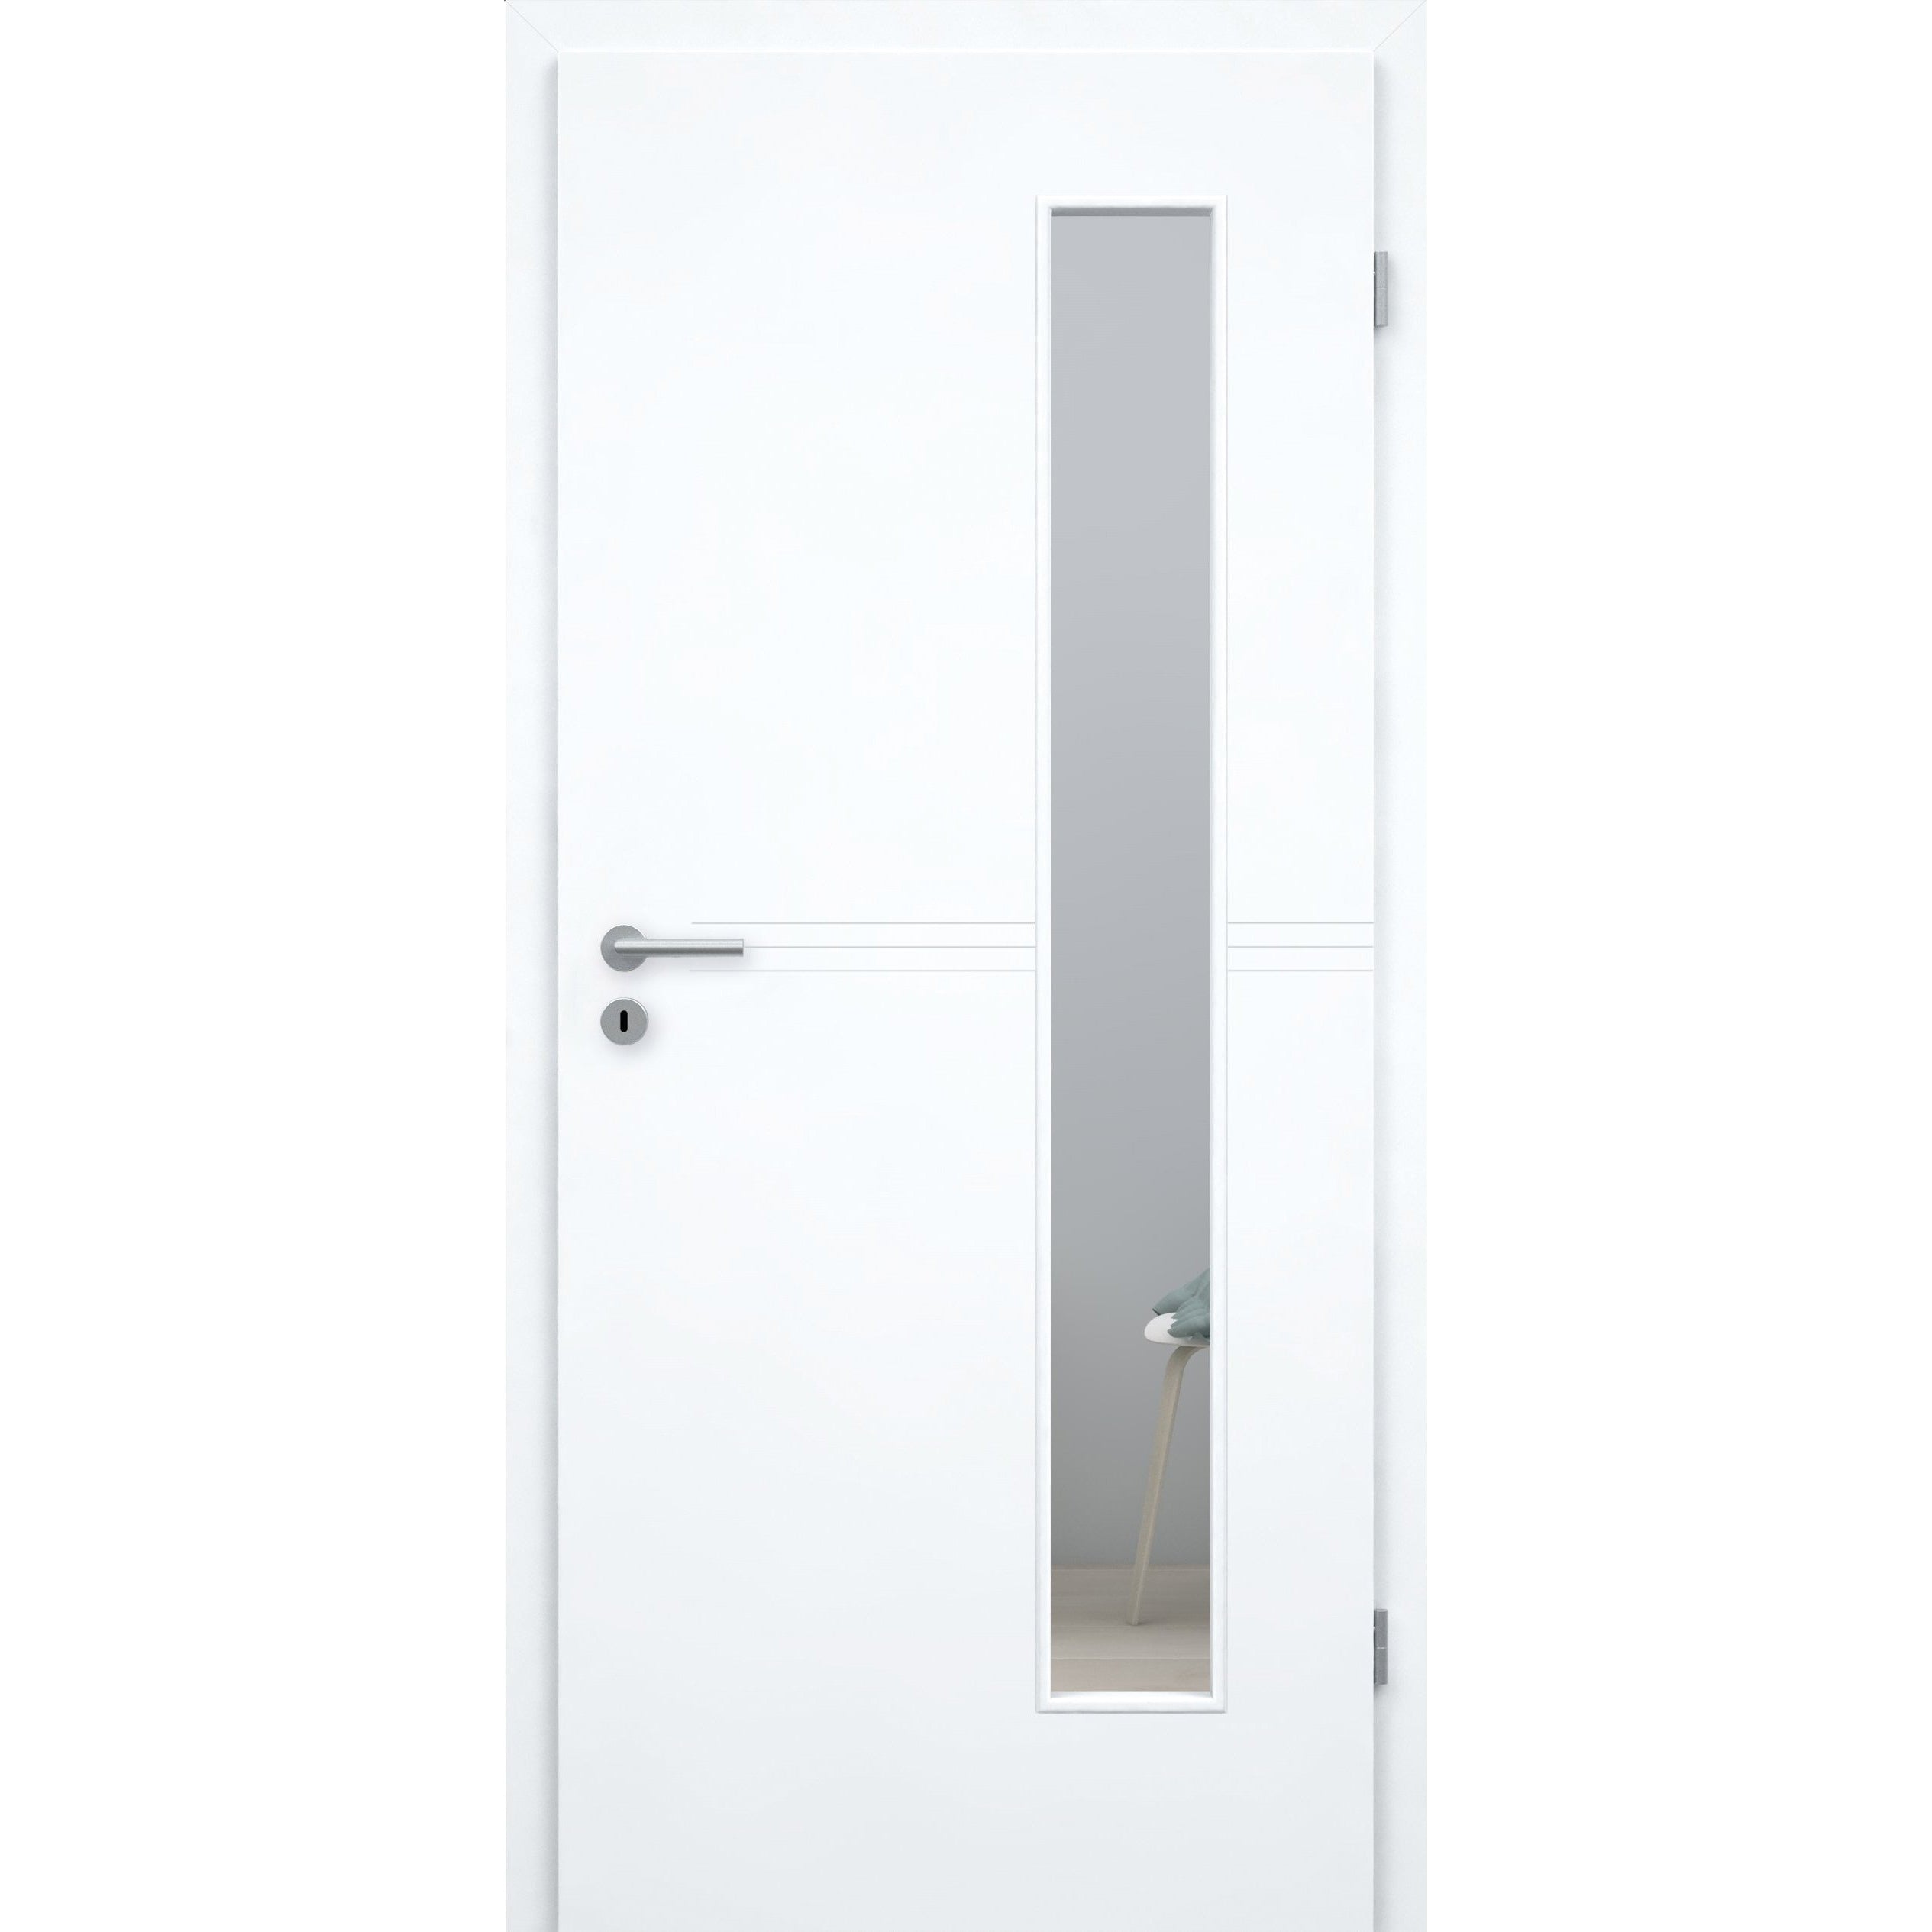 Zimmertür mit Zarge und Lichtausschnitt brillant-weiß 3 Rillen Designkante - Modell Designtür Q33LAB